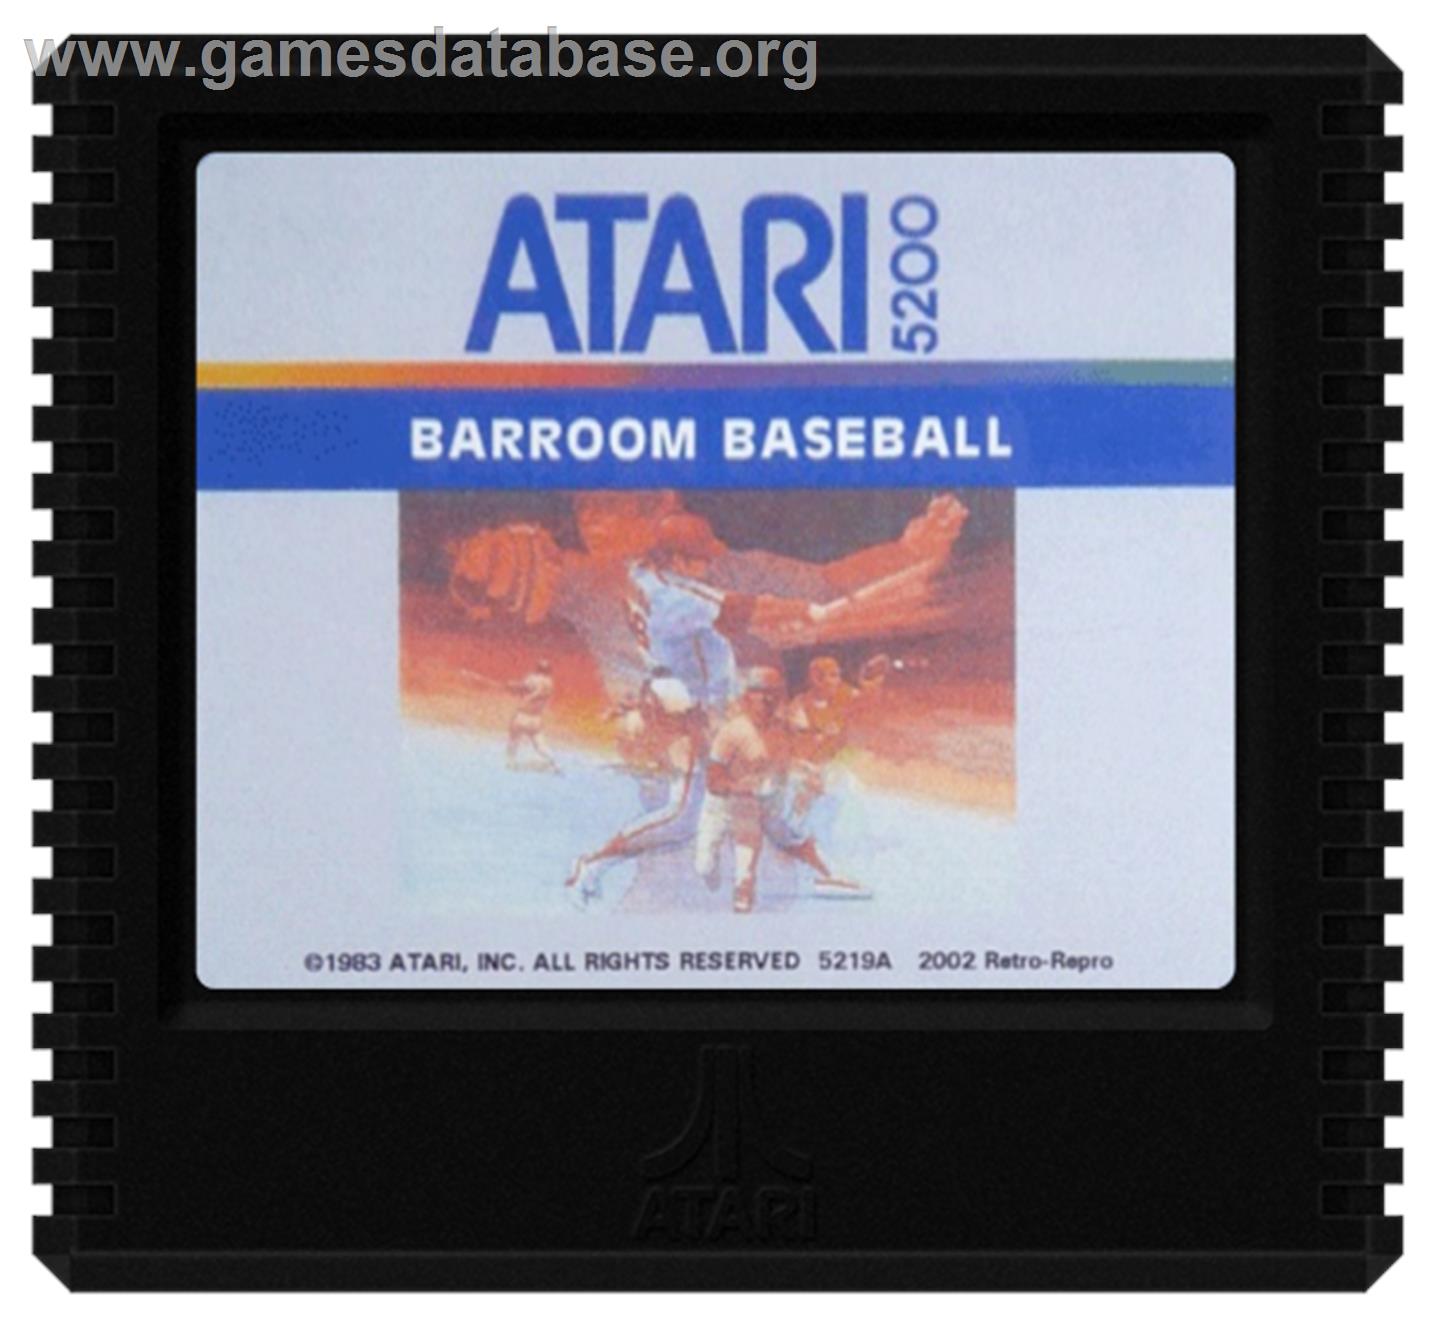 Barroom Baseball - Atari 5200 - Artwork - Cartridge